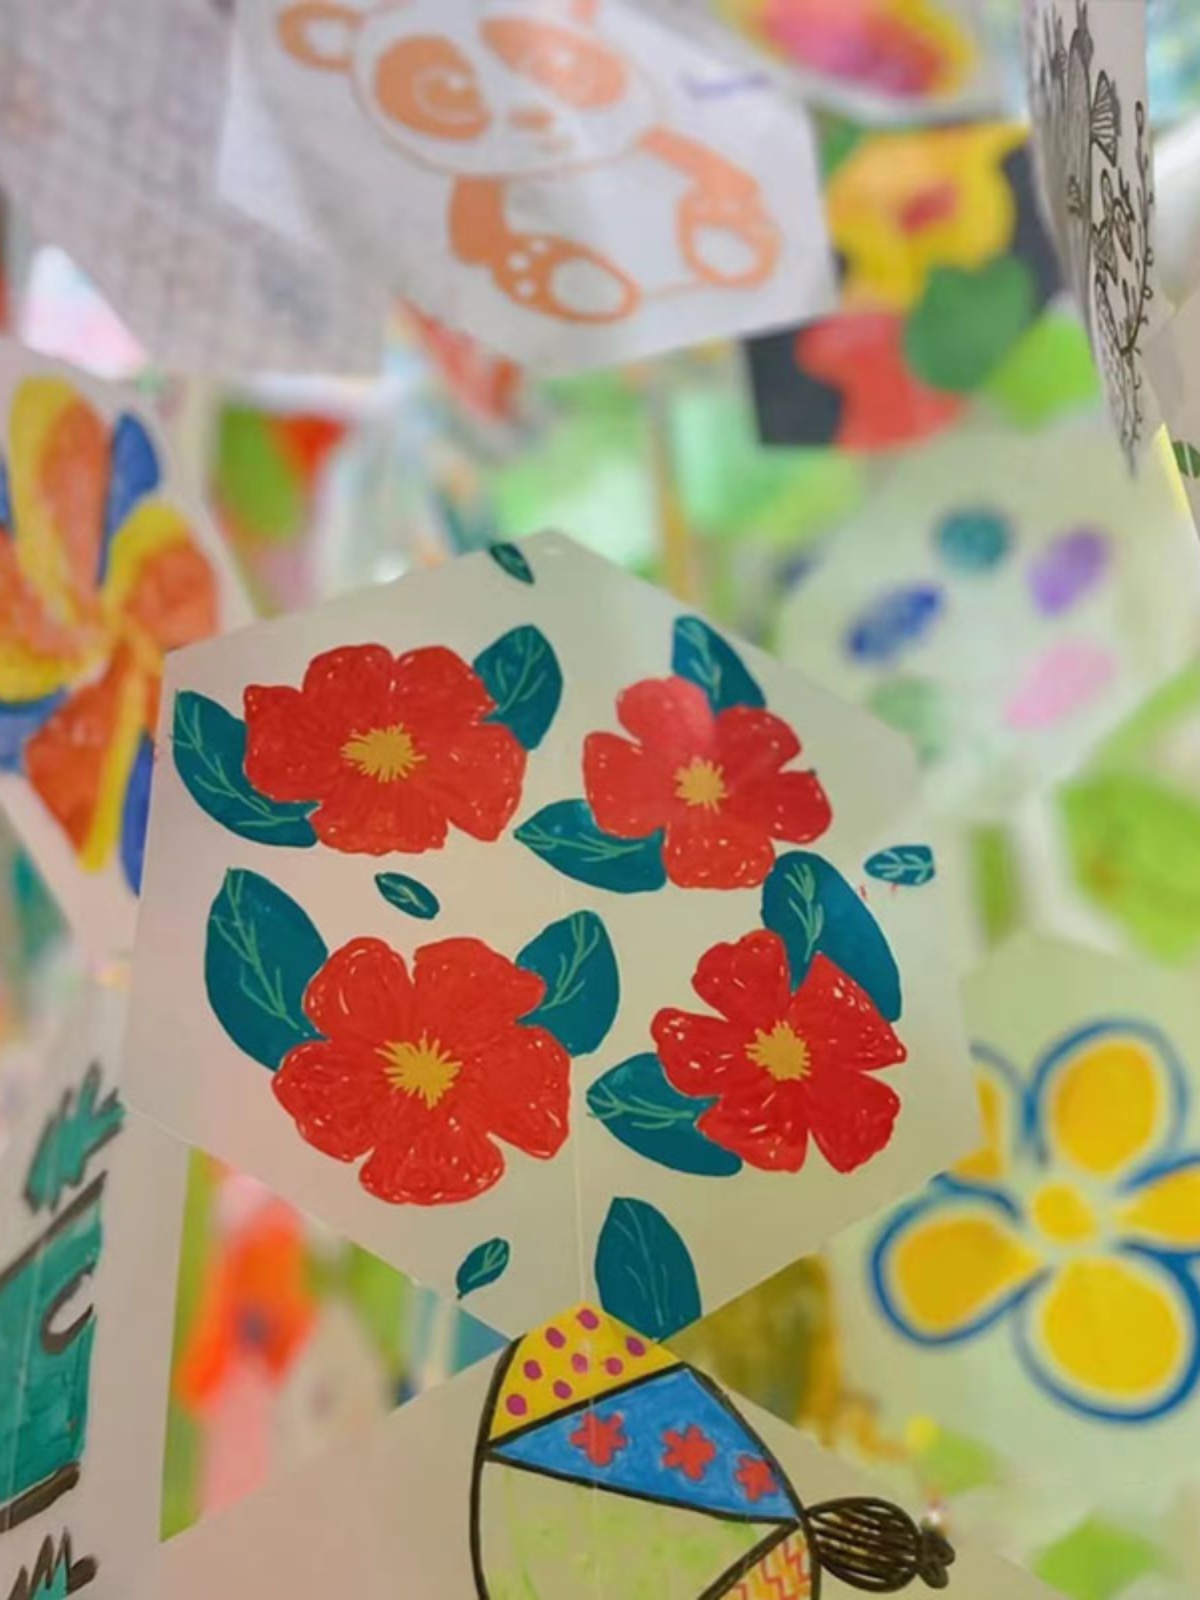 幼儿园环创吊饰六边形彩色塑料片 展览会挂饰手工DIY儿童涂鸦画板